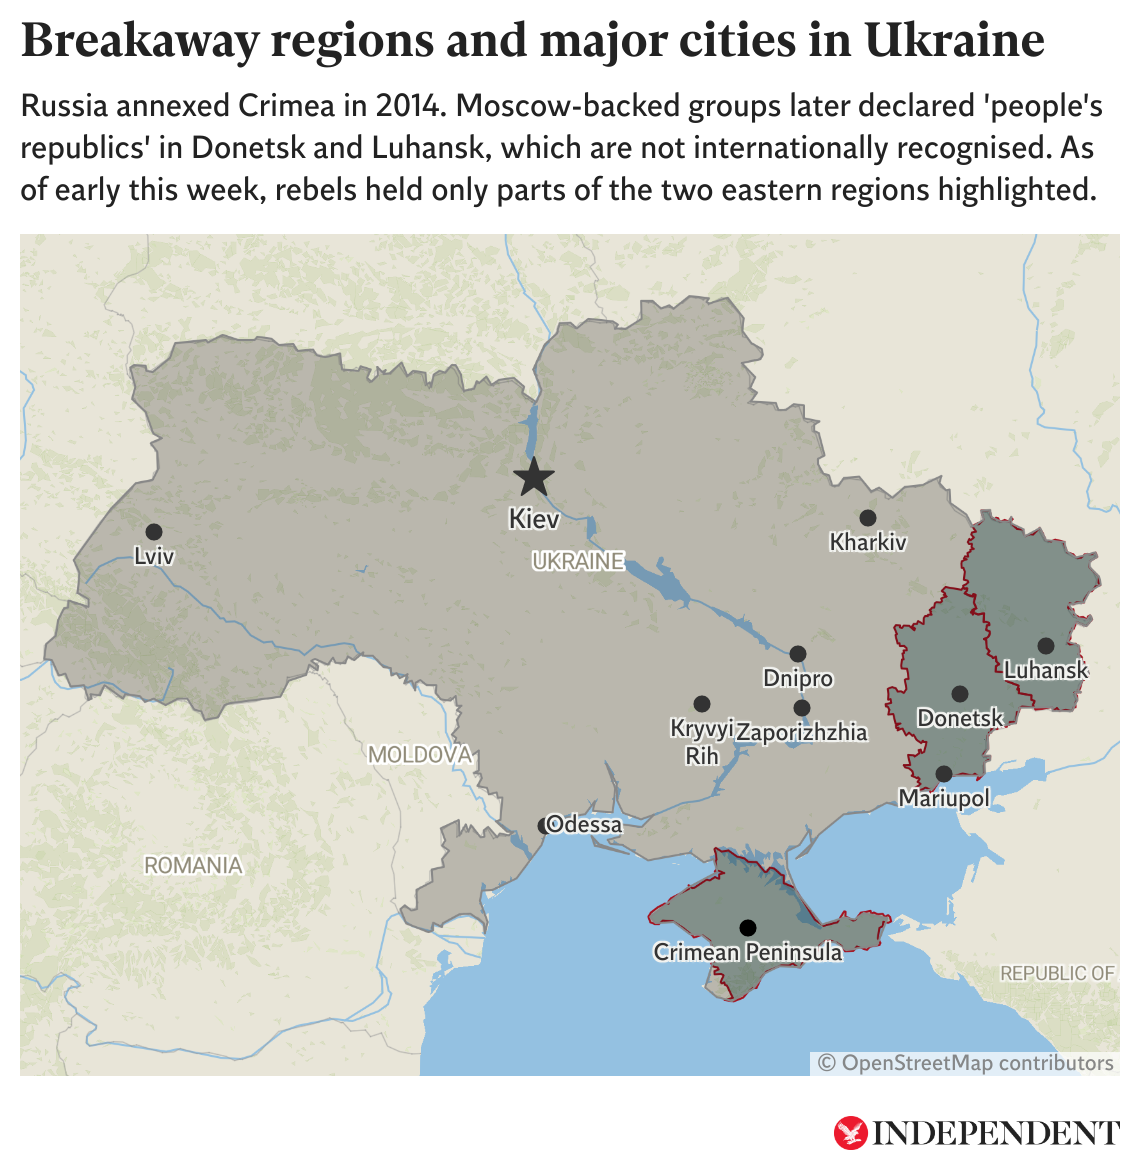 Este mapa muestra las principales ciudades en Ucrania, así como las regiones separatistas respaldadas por Moscú. A inicios de la semana, los rebeldes ocupaban solo las partes resaltadas de las regiones de Donetsk y Luhansk